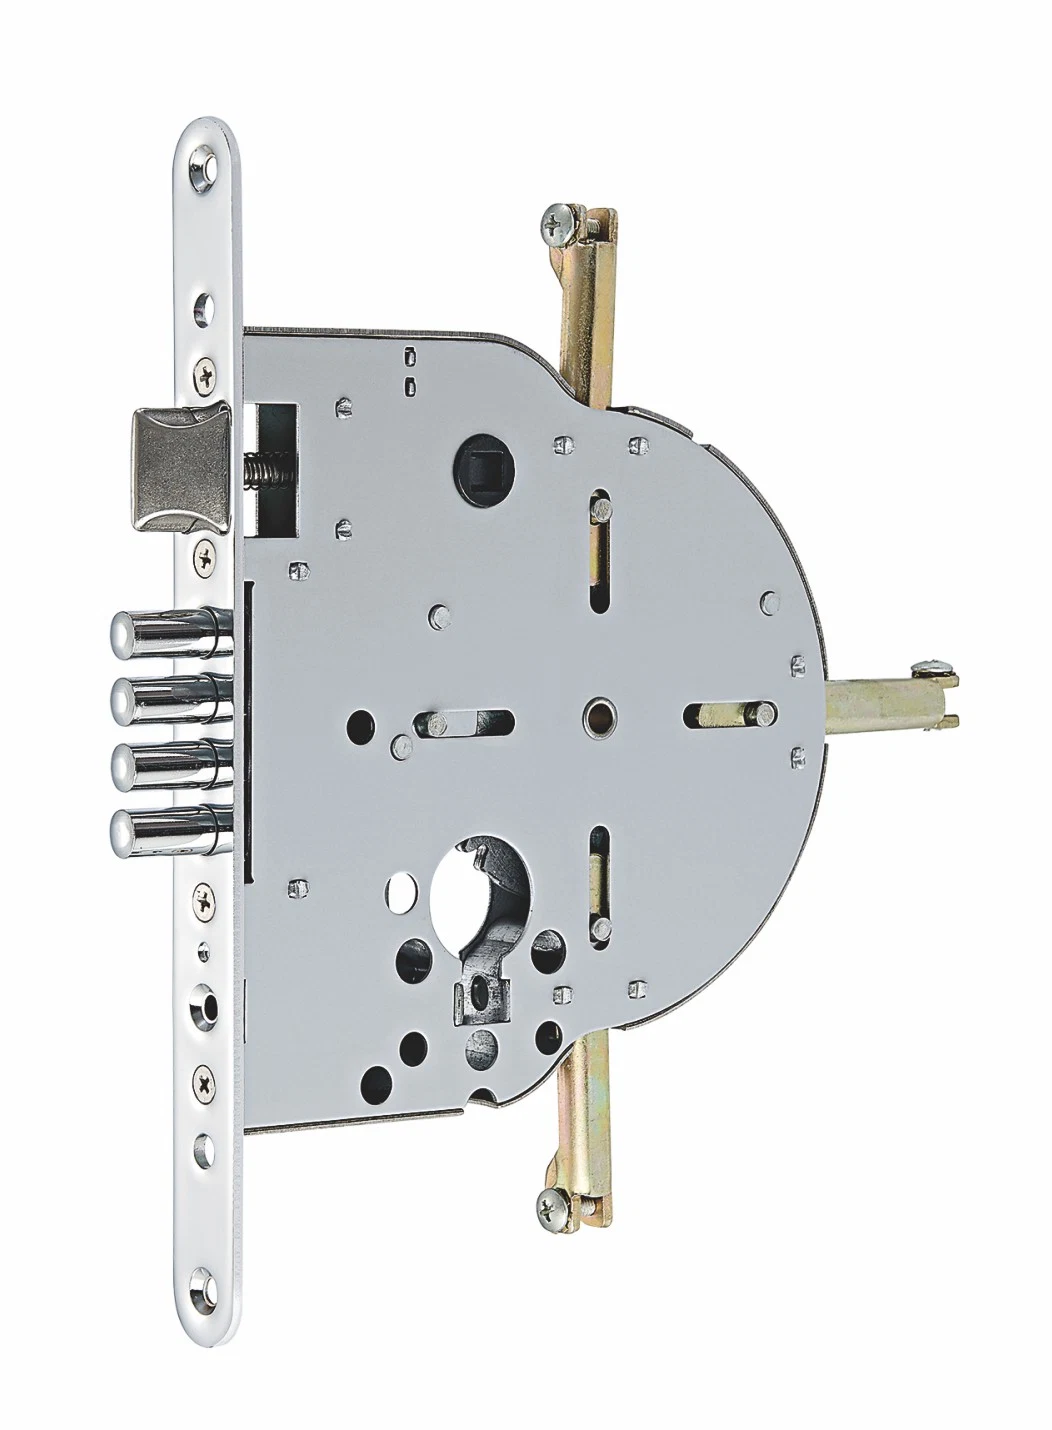 Security Bulletproof Door Outdoor Smart Lock /Multi Point Lock 265 Fingerprint Lock